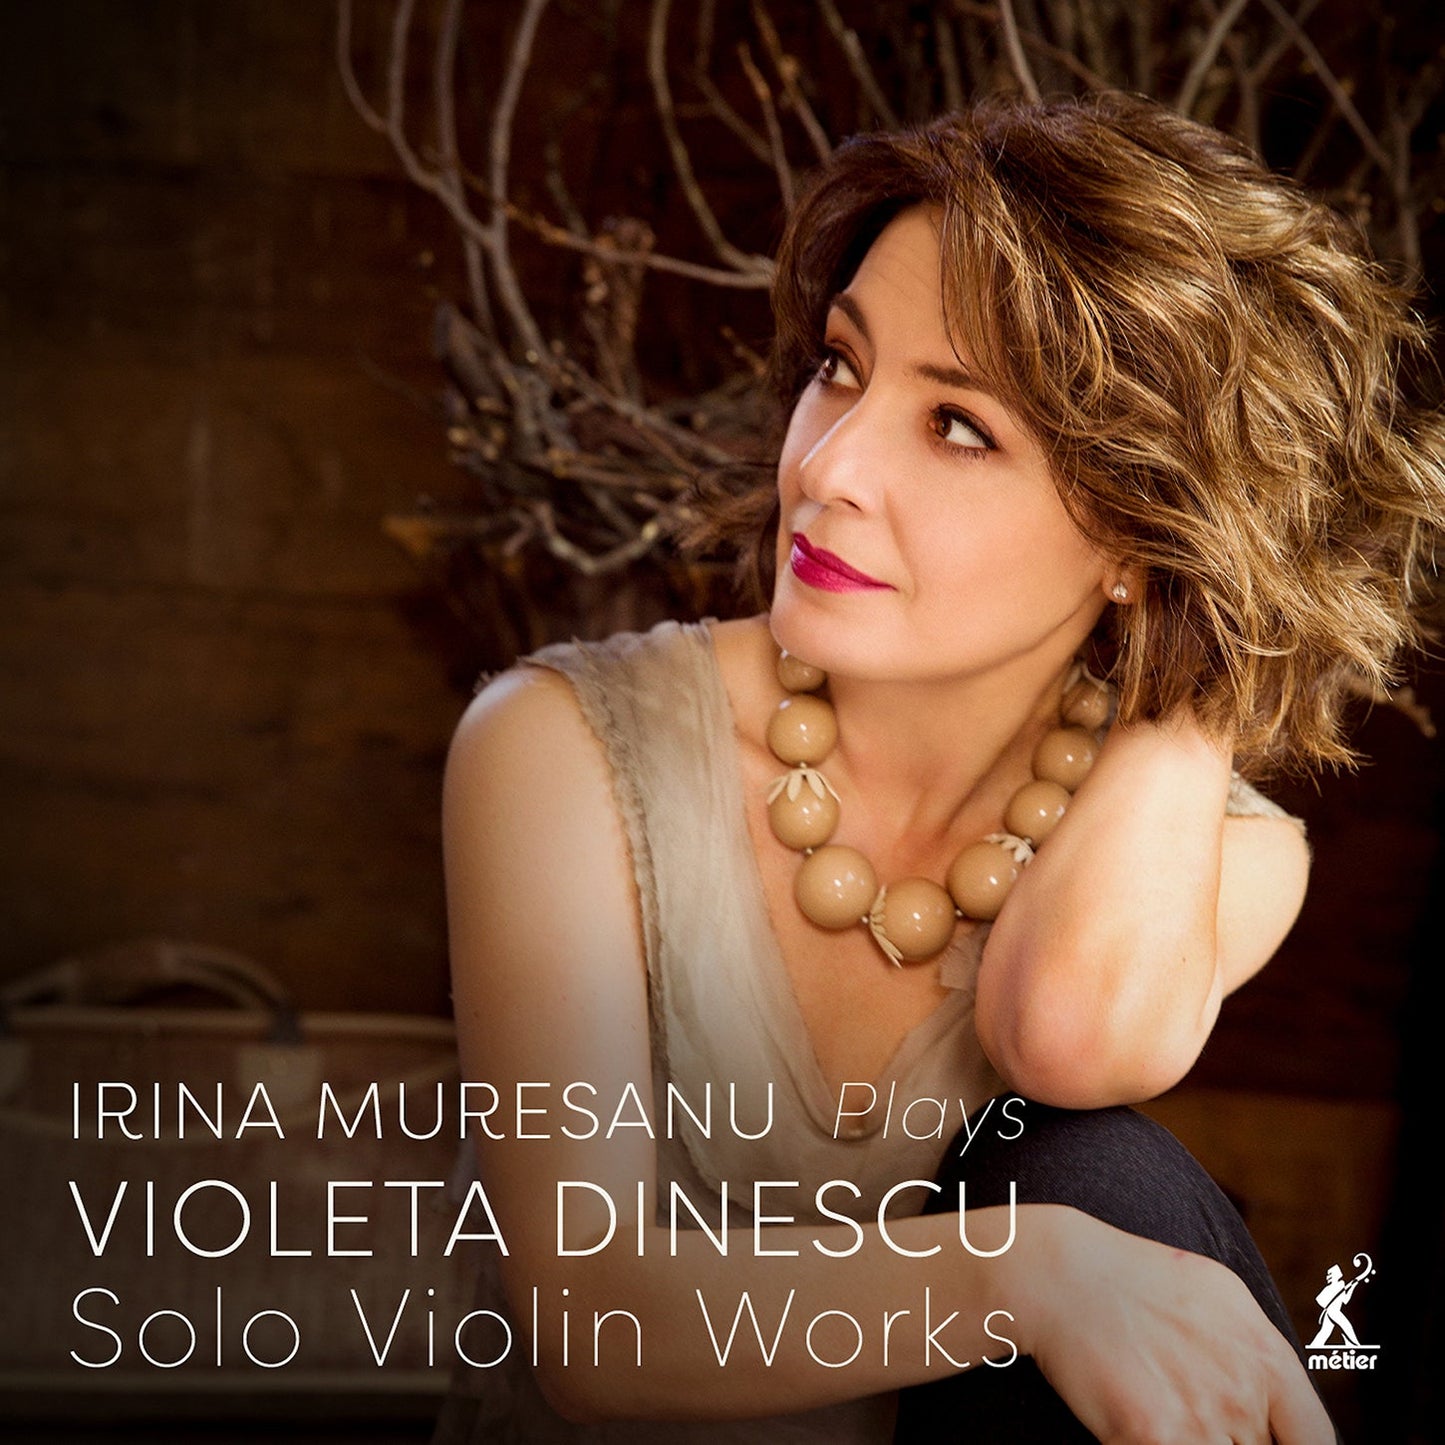 Dinescu; Solo Violin Works / Irina Muresanu